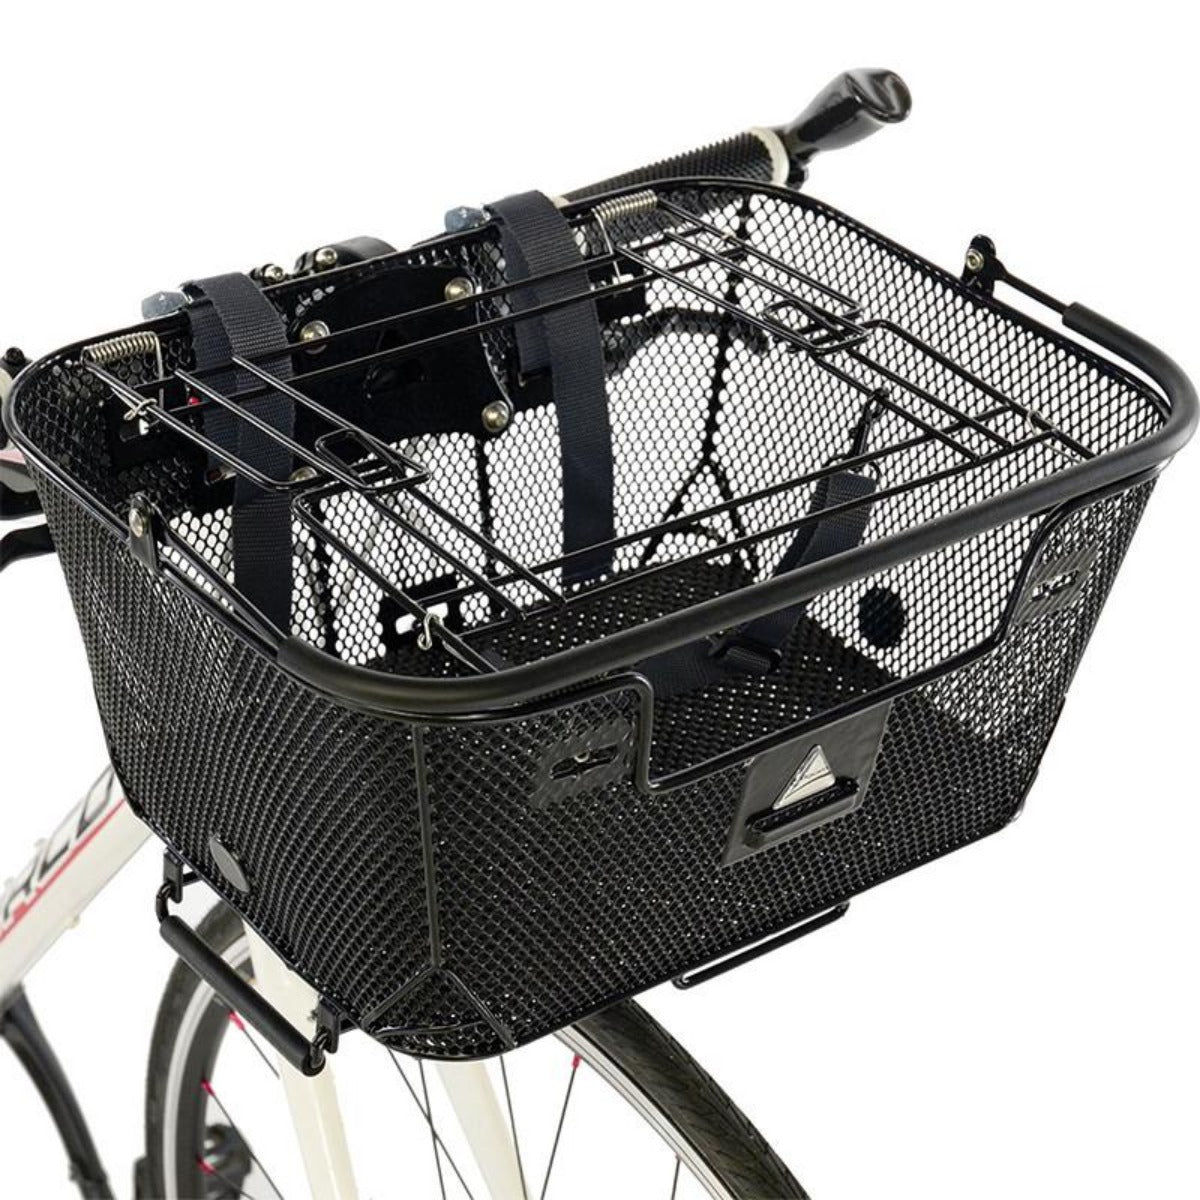 rear pet basket for bike